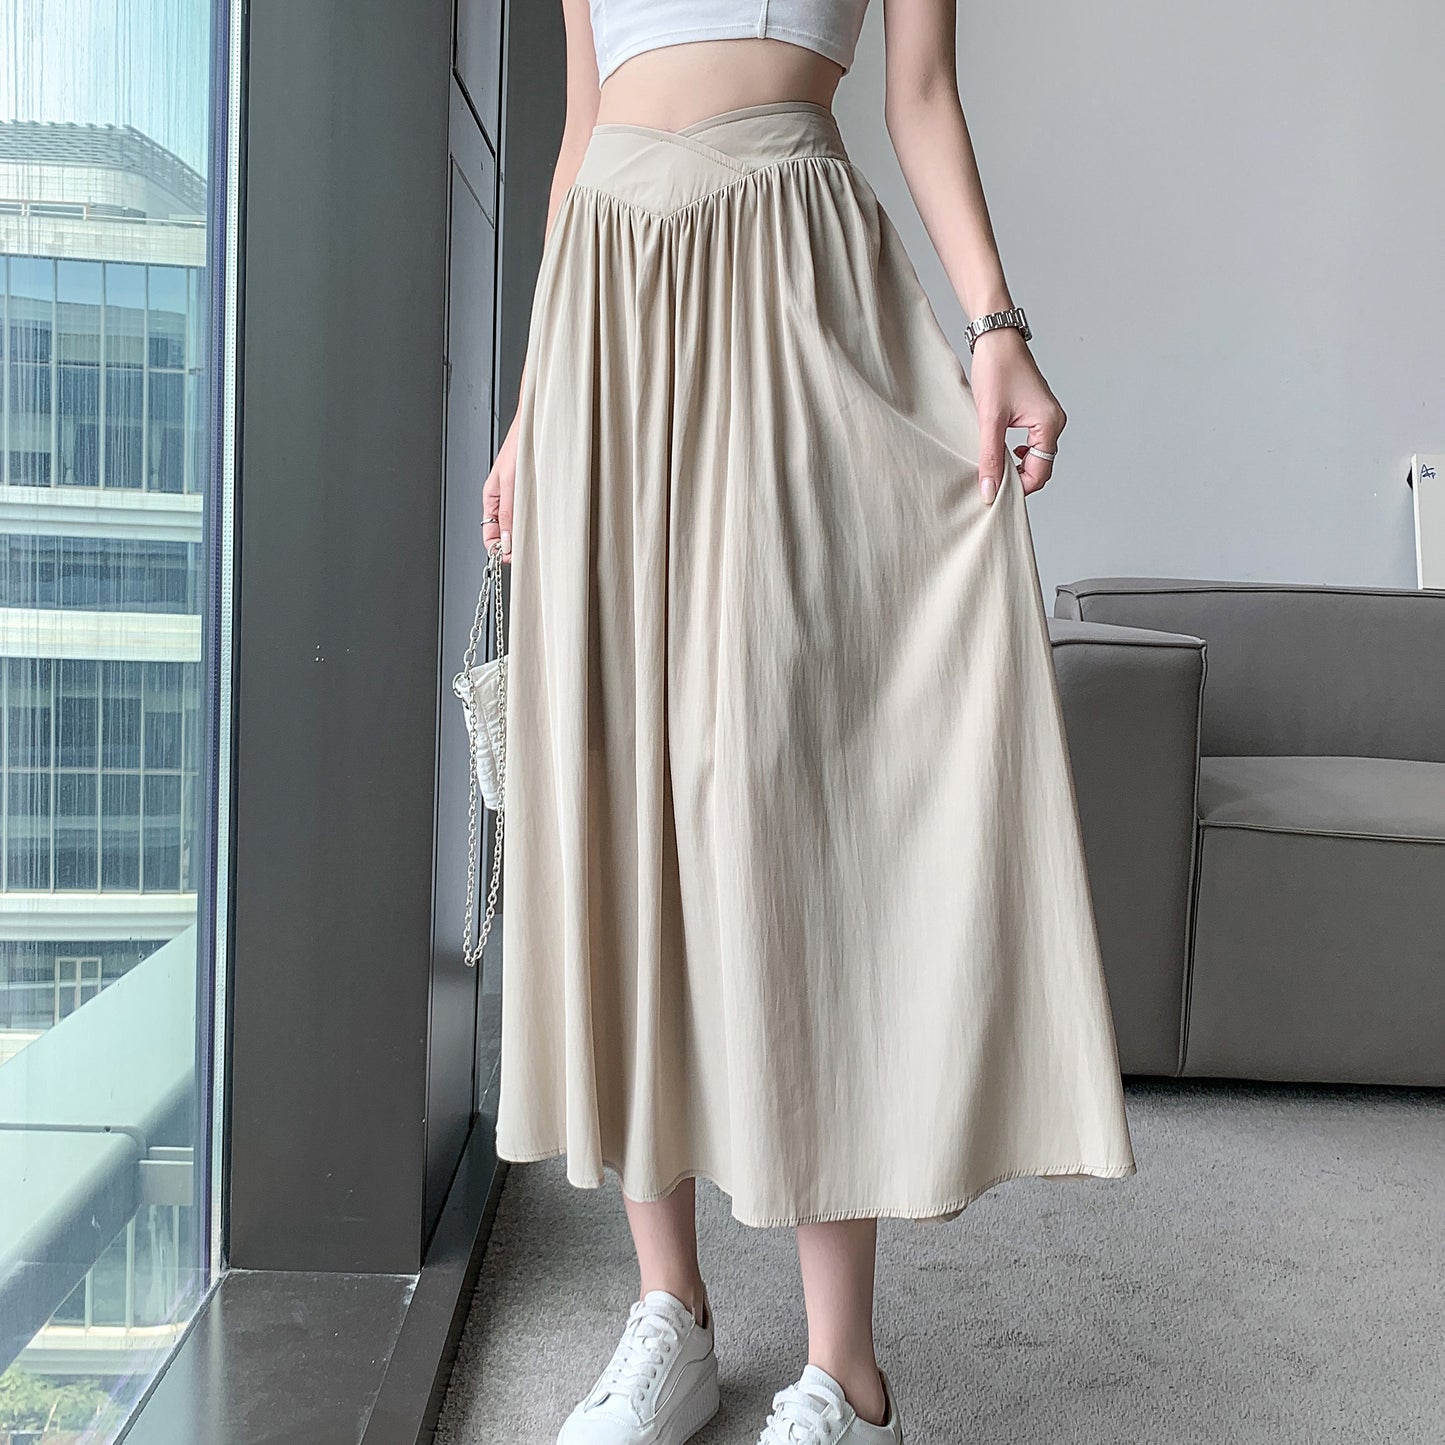 Falda de simplicidad a la cintura, estilo midi y holgada.